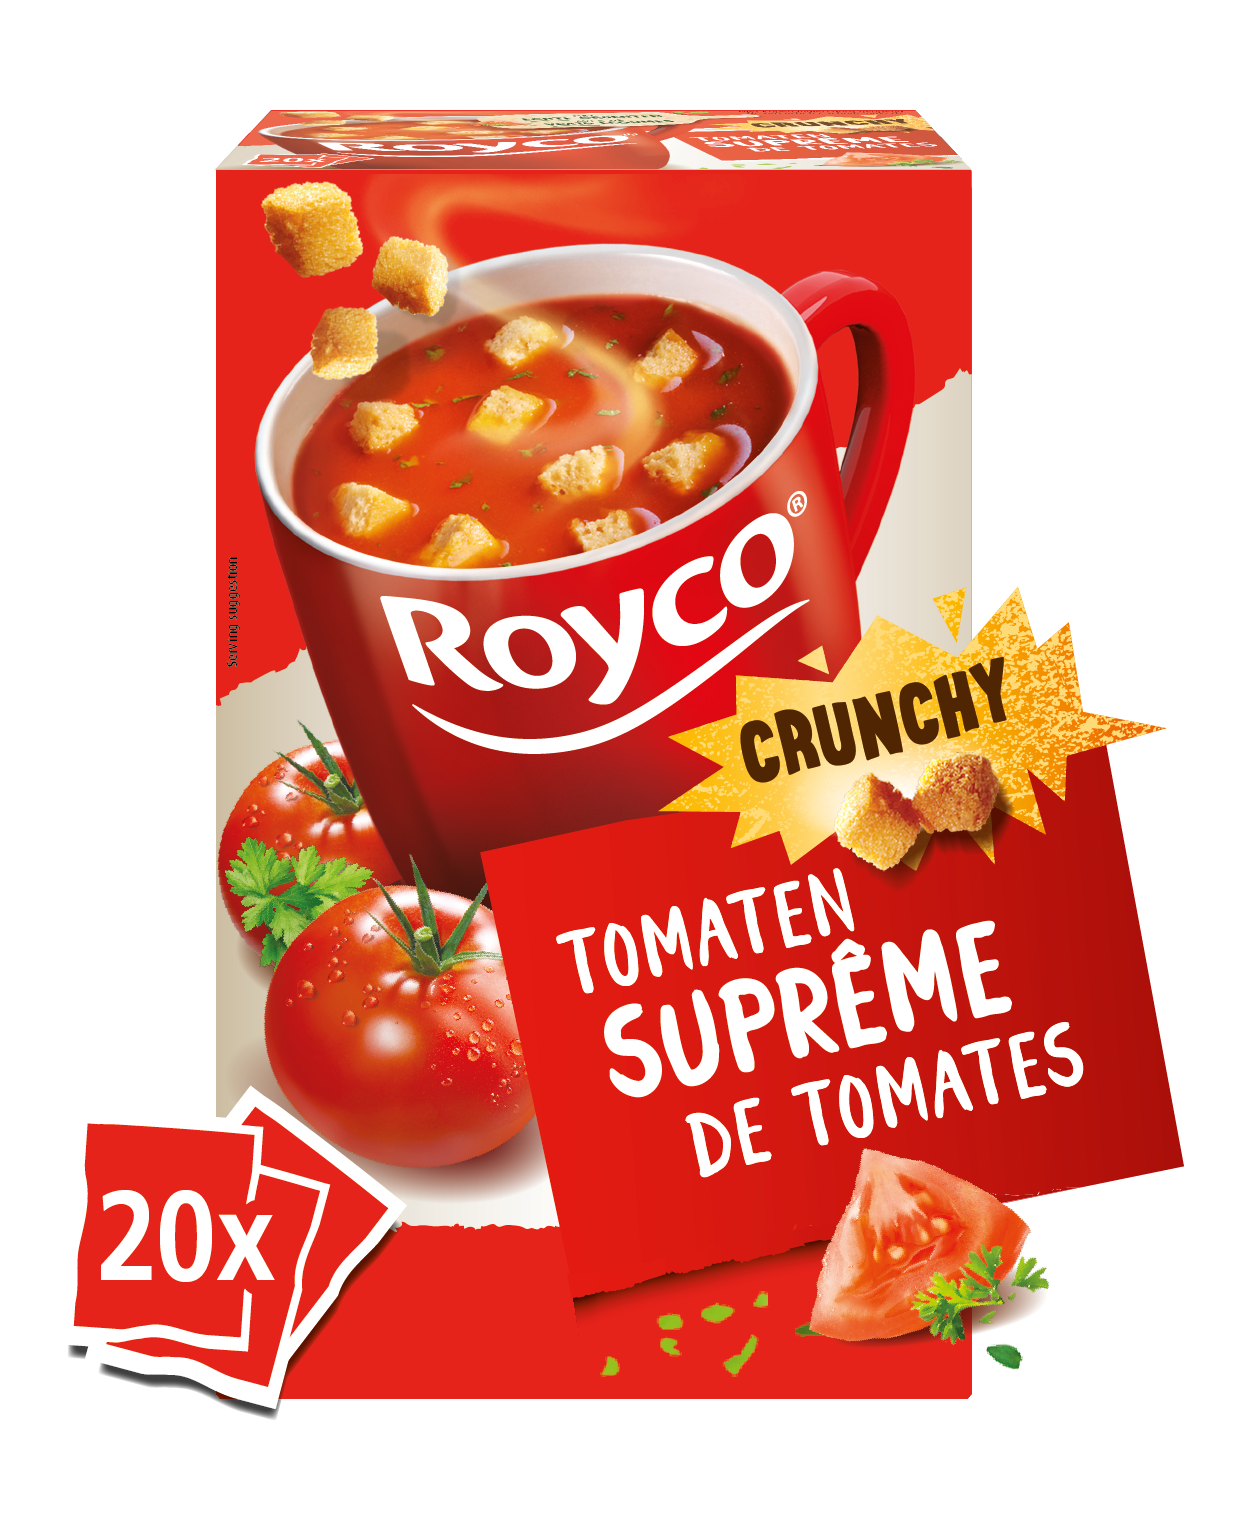 Royco Crunchy Tomatensuprême 